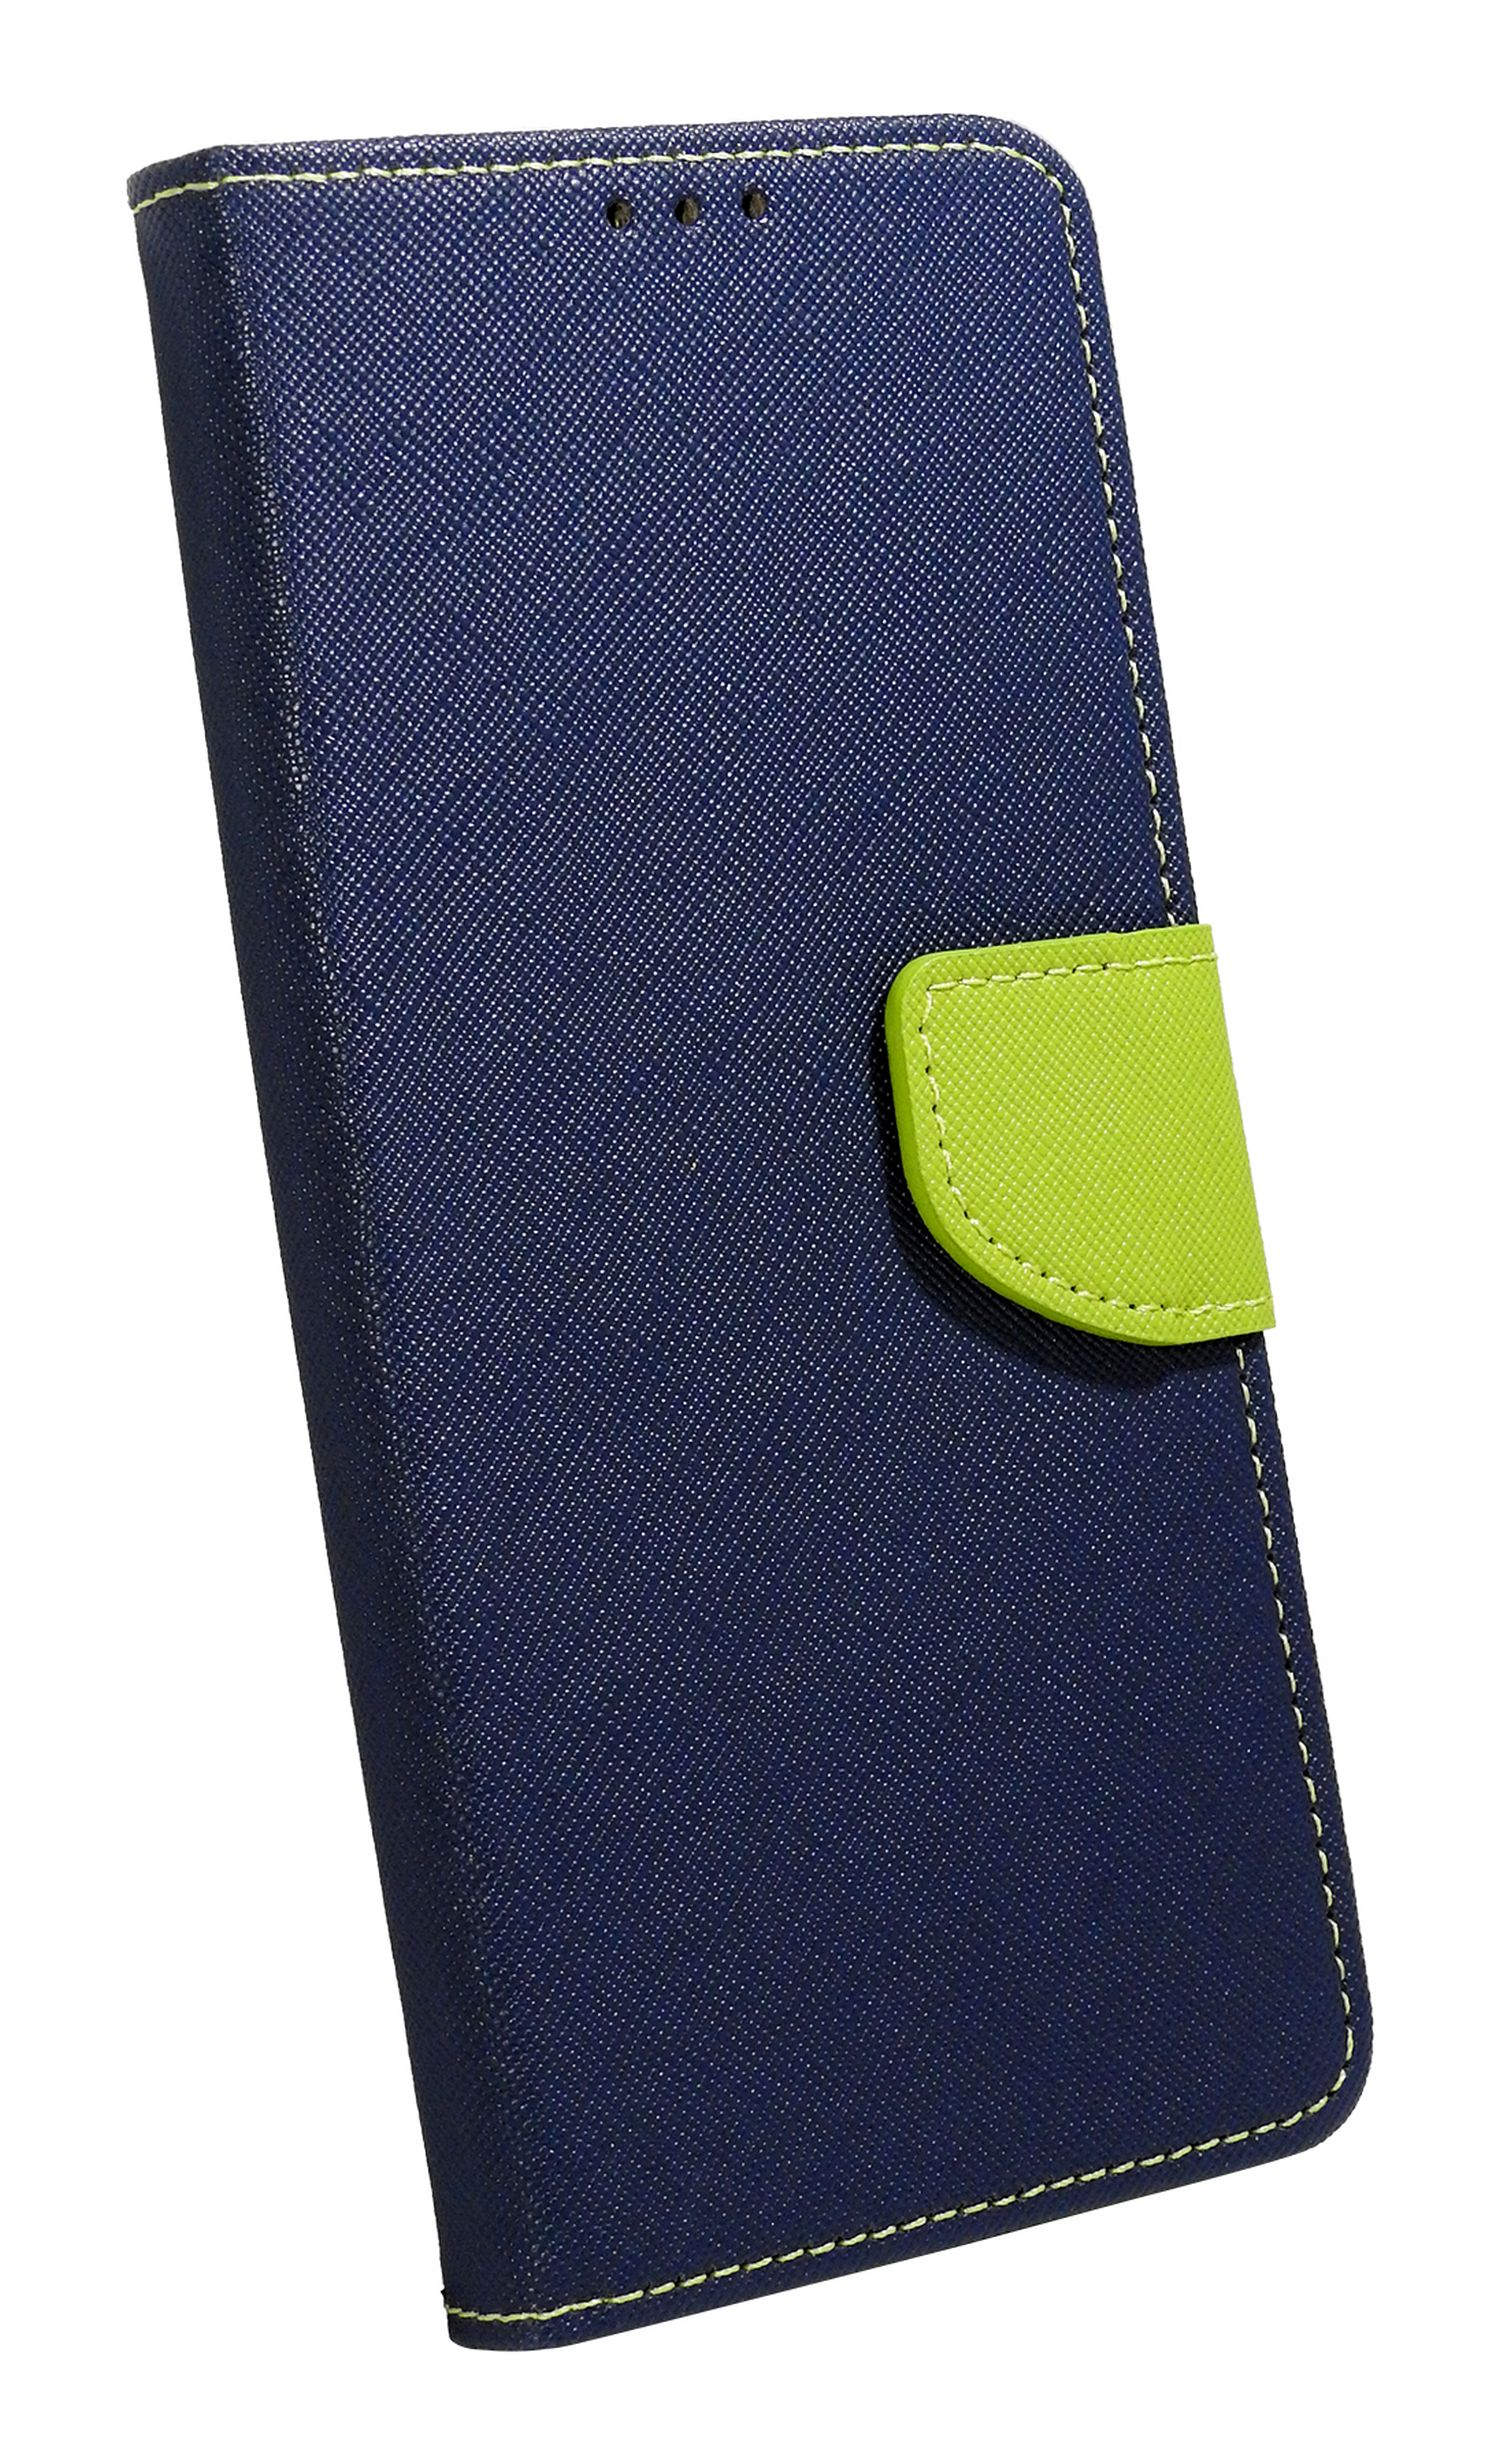 Bookcover, S23 Blau-Grün (S911B), Tasch, Samsung, Buch COFI Galaxy